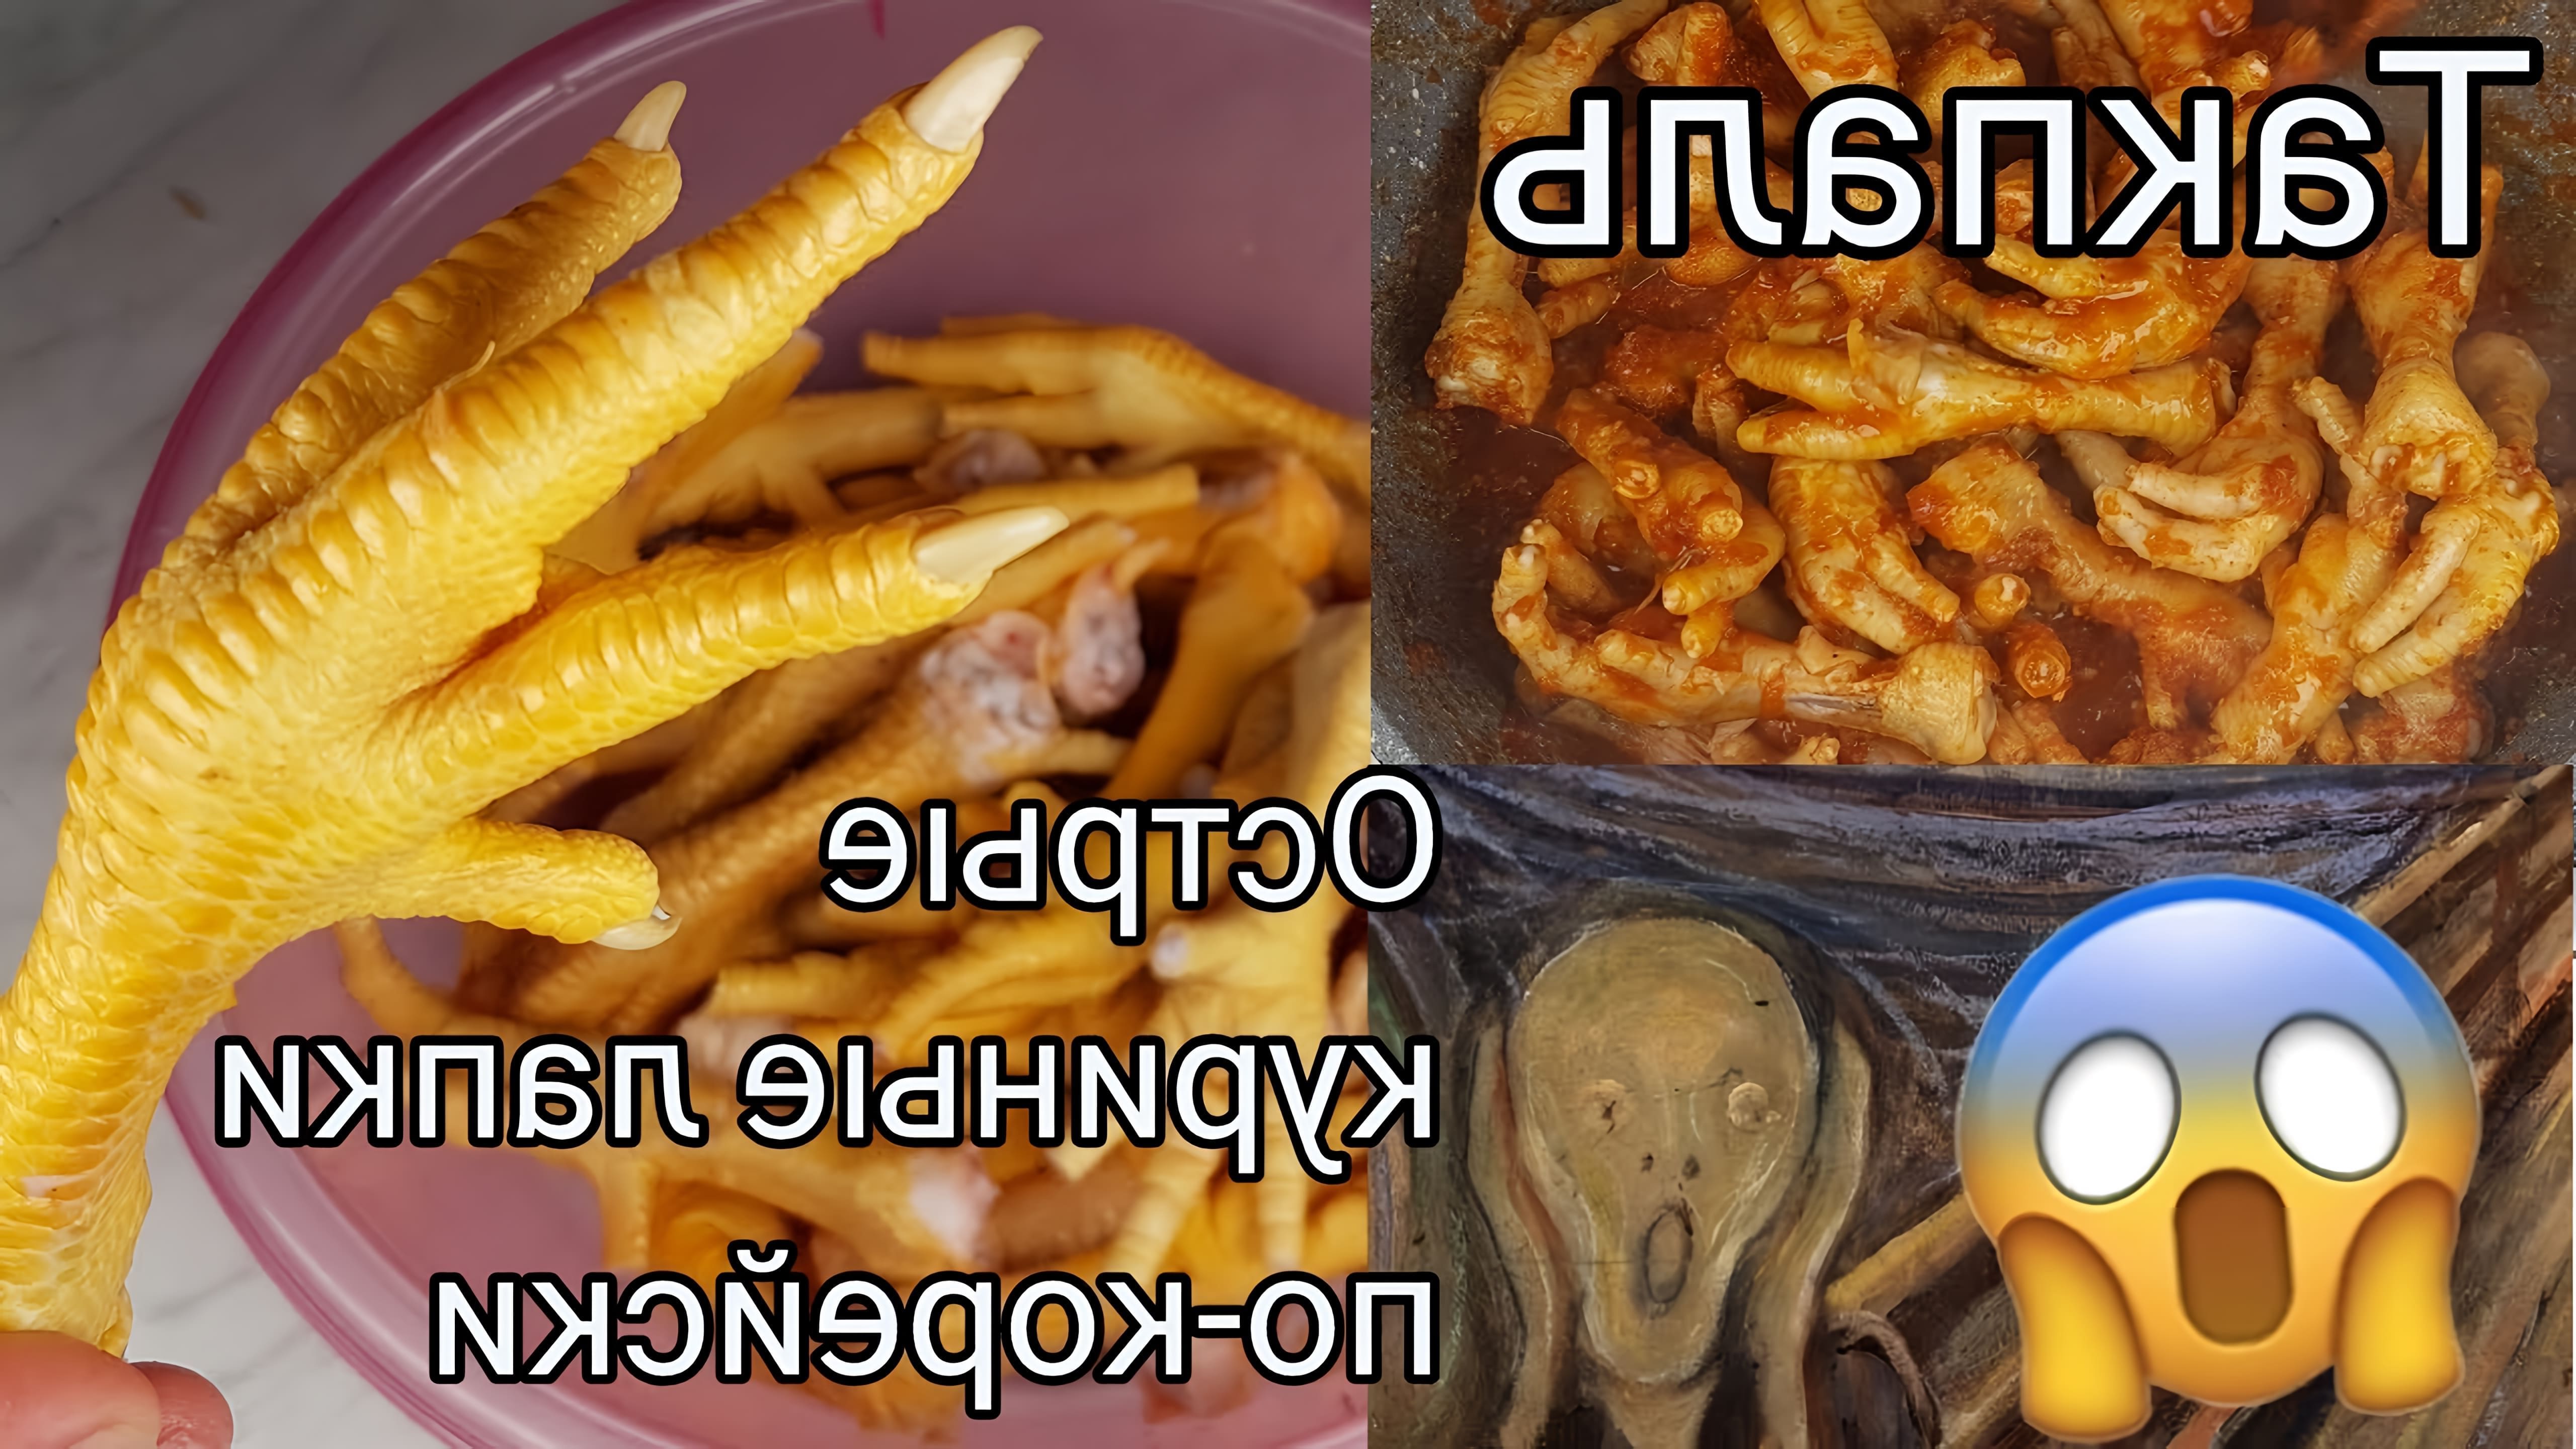 В этом видео демонстрируется рецепт приготовления острых куриных лапок по-корейски